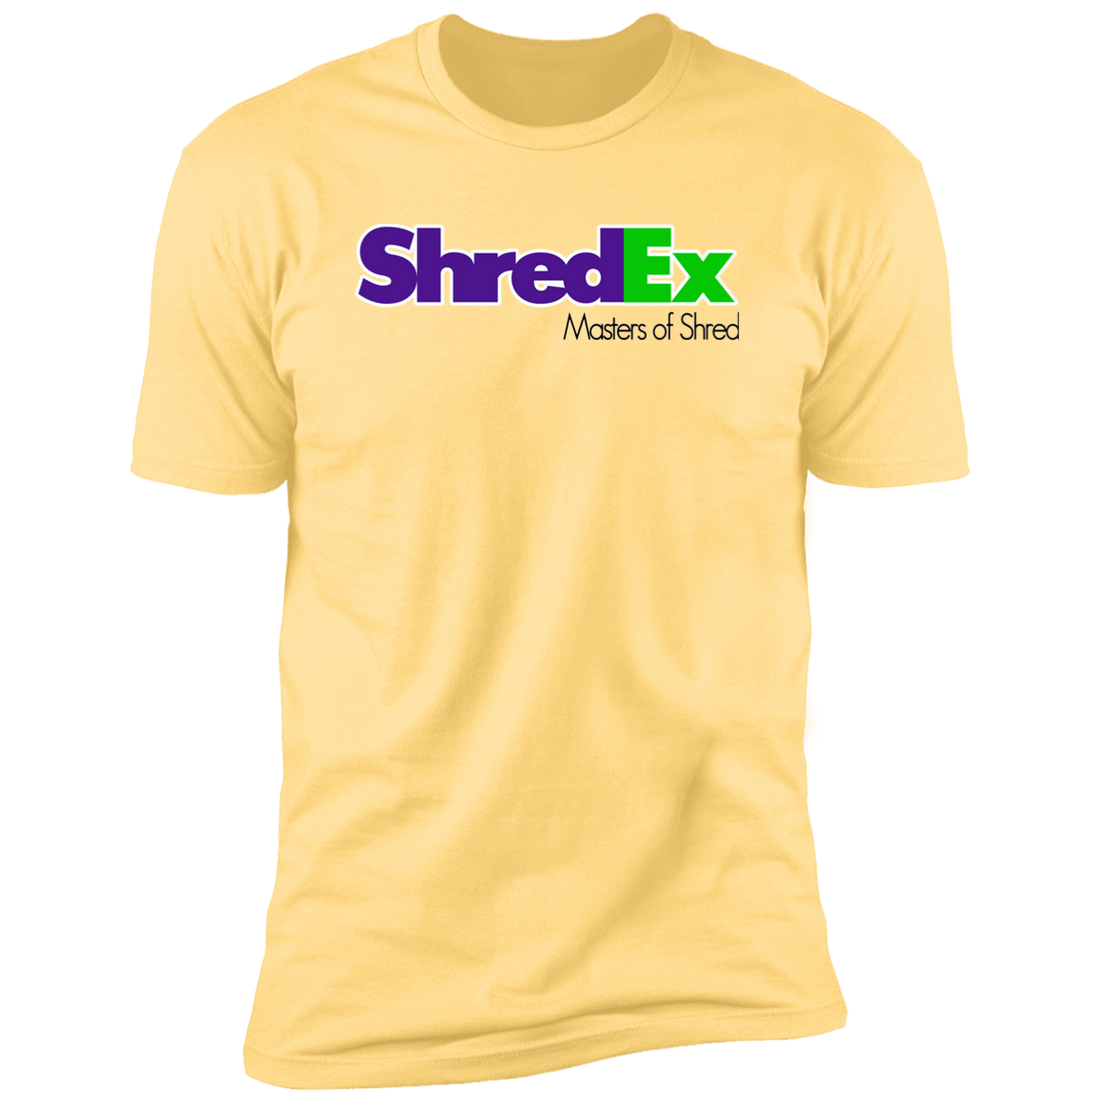 ShredEx